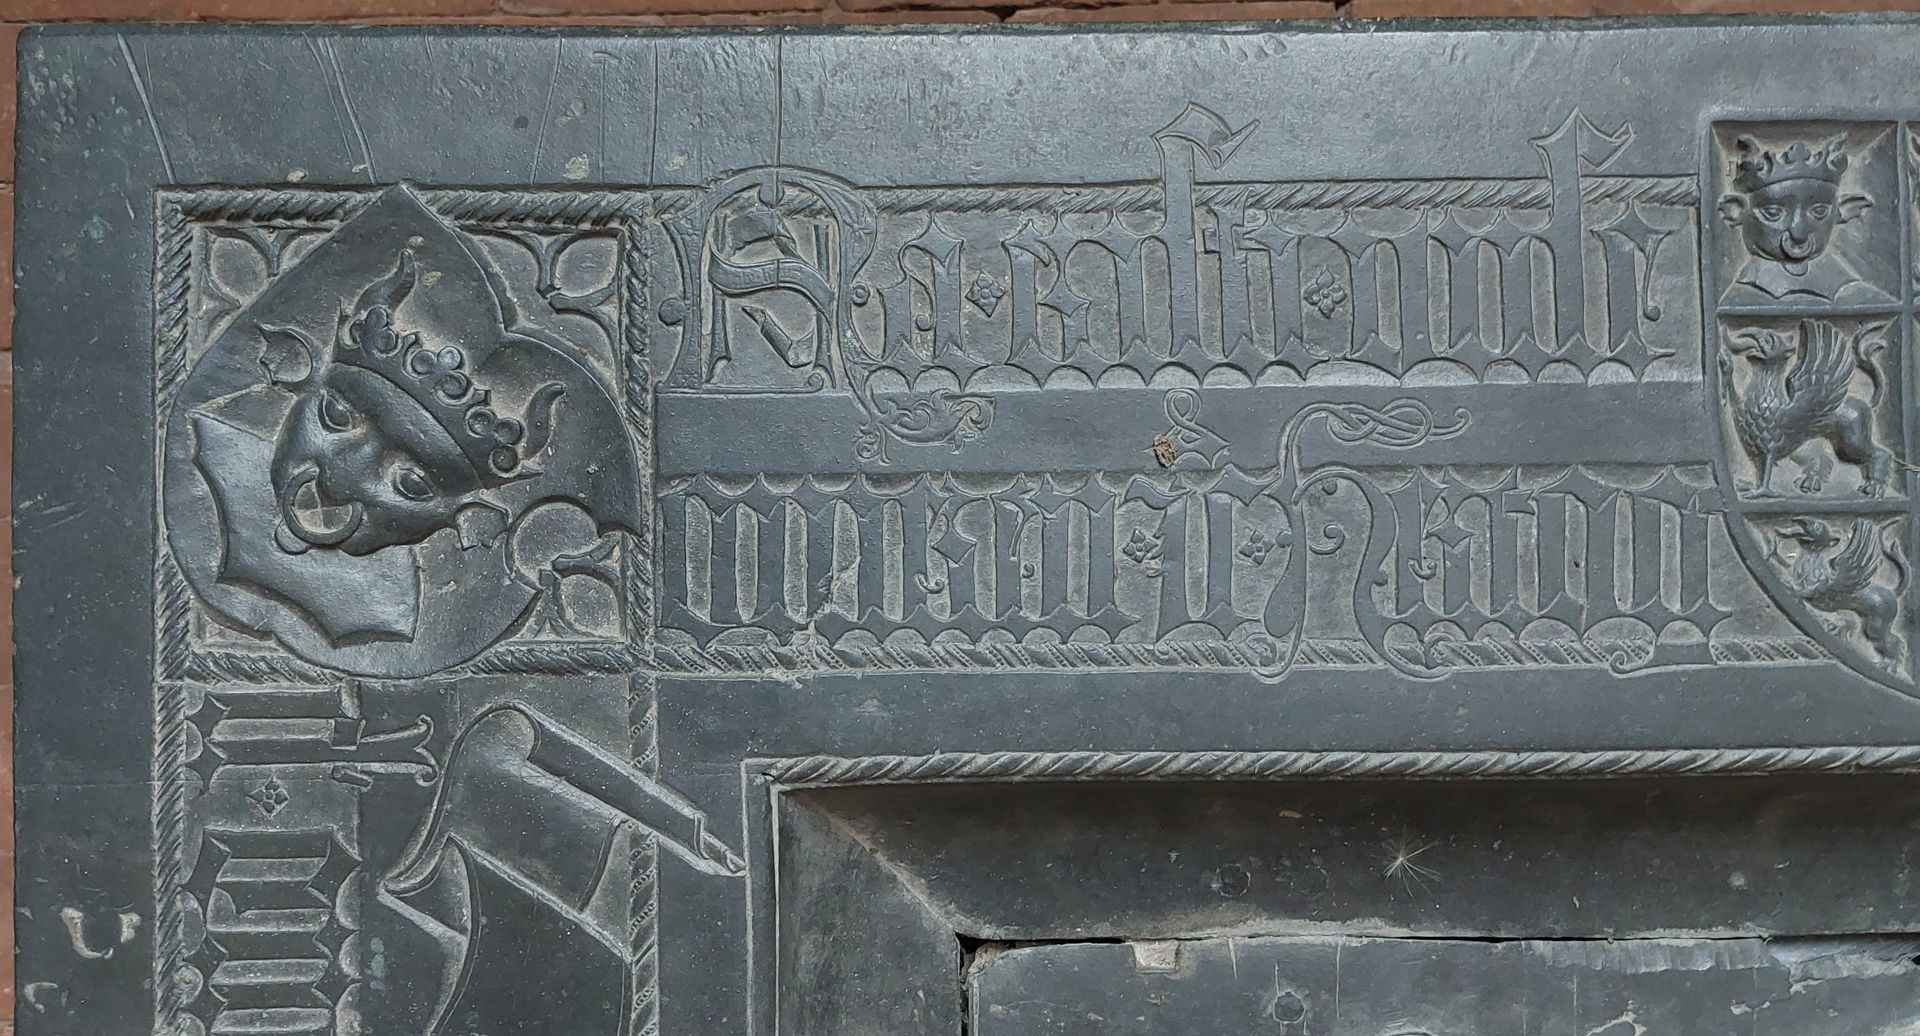 Grabplatte der Herzogin Sophia von Mecklenburg, Prinzessin von Pommern linke ober Ecke mit dem Stierkopf des Wappens von Mecklenburg